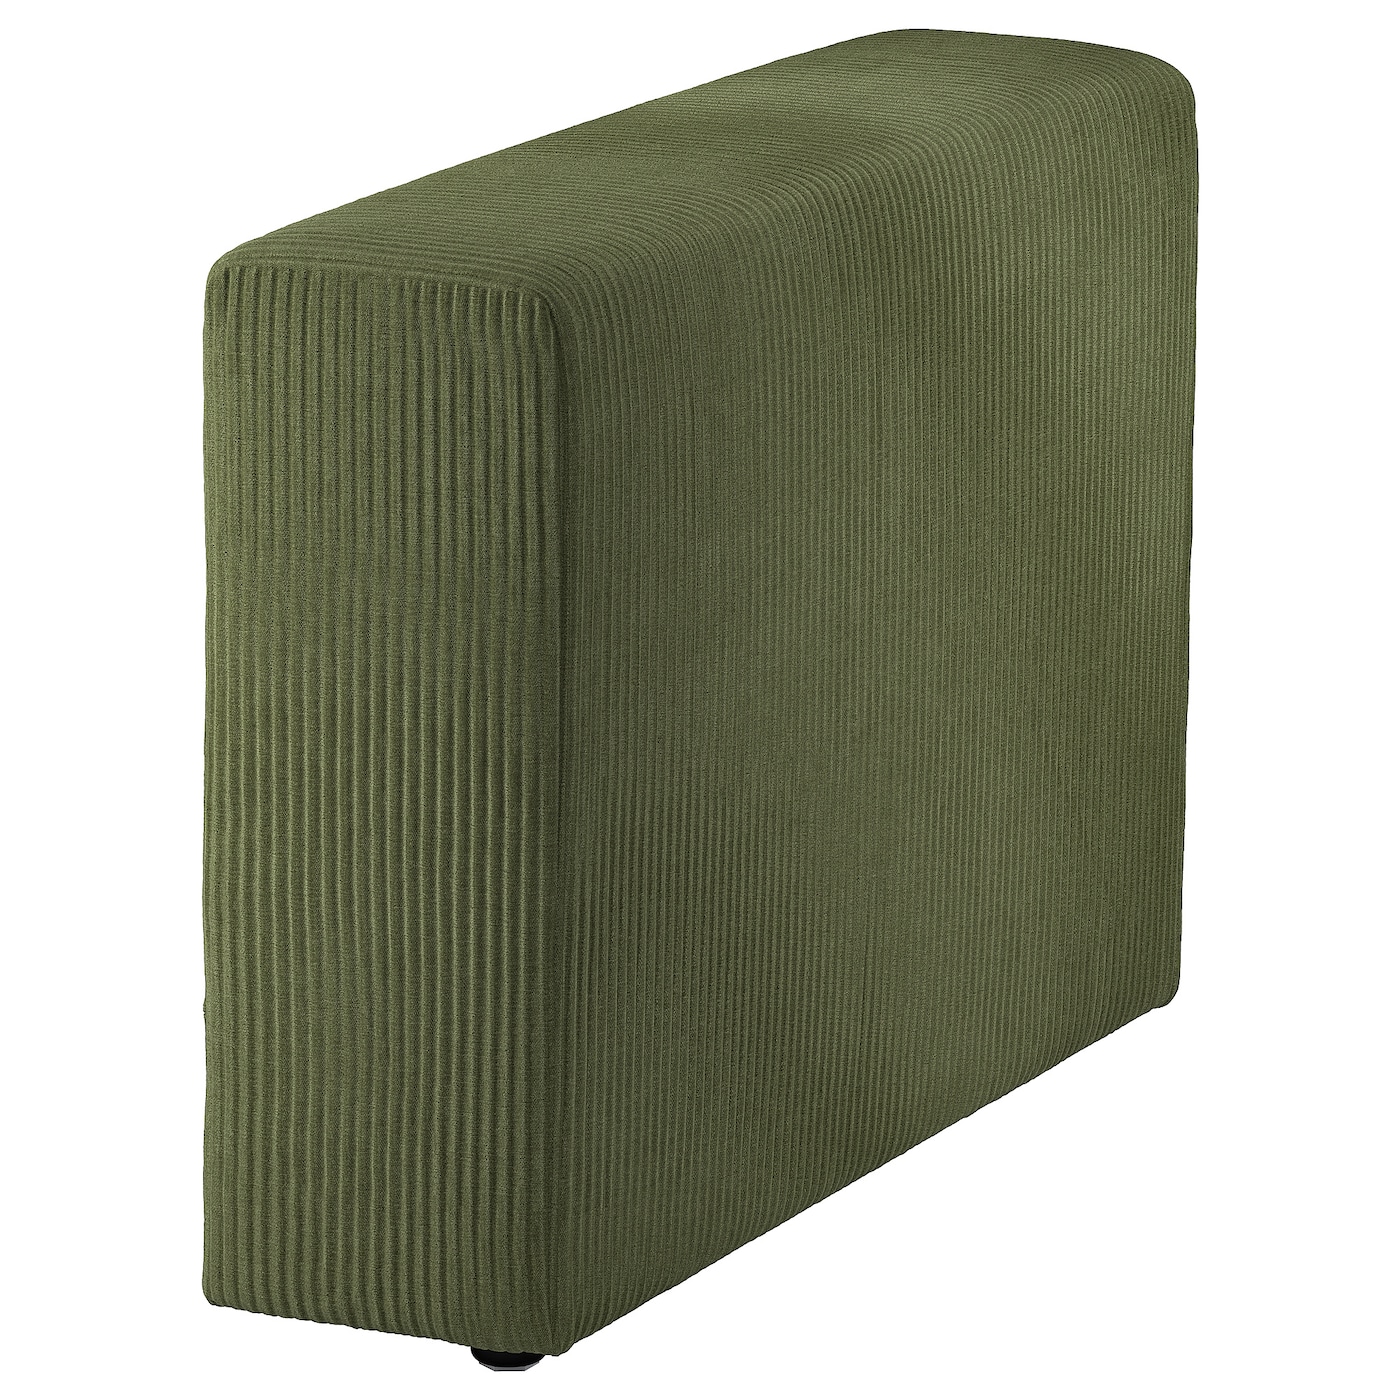 ДЖЭТТЕБО Подлокотник, Самсала темно-желто-зеленый JÄTTEBO IKEA подлокотник для офисного кресла подушки подлокотники подлокотник съемная и моющаяся подушка для локтя